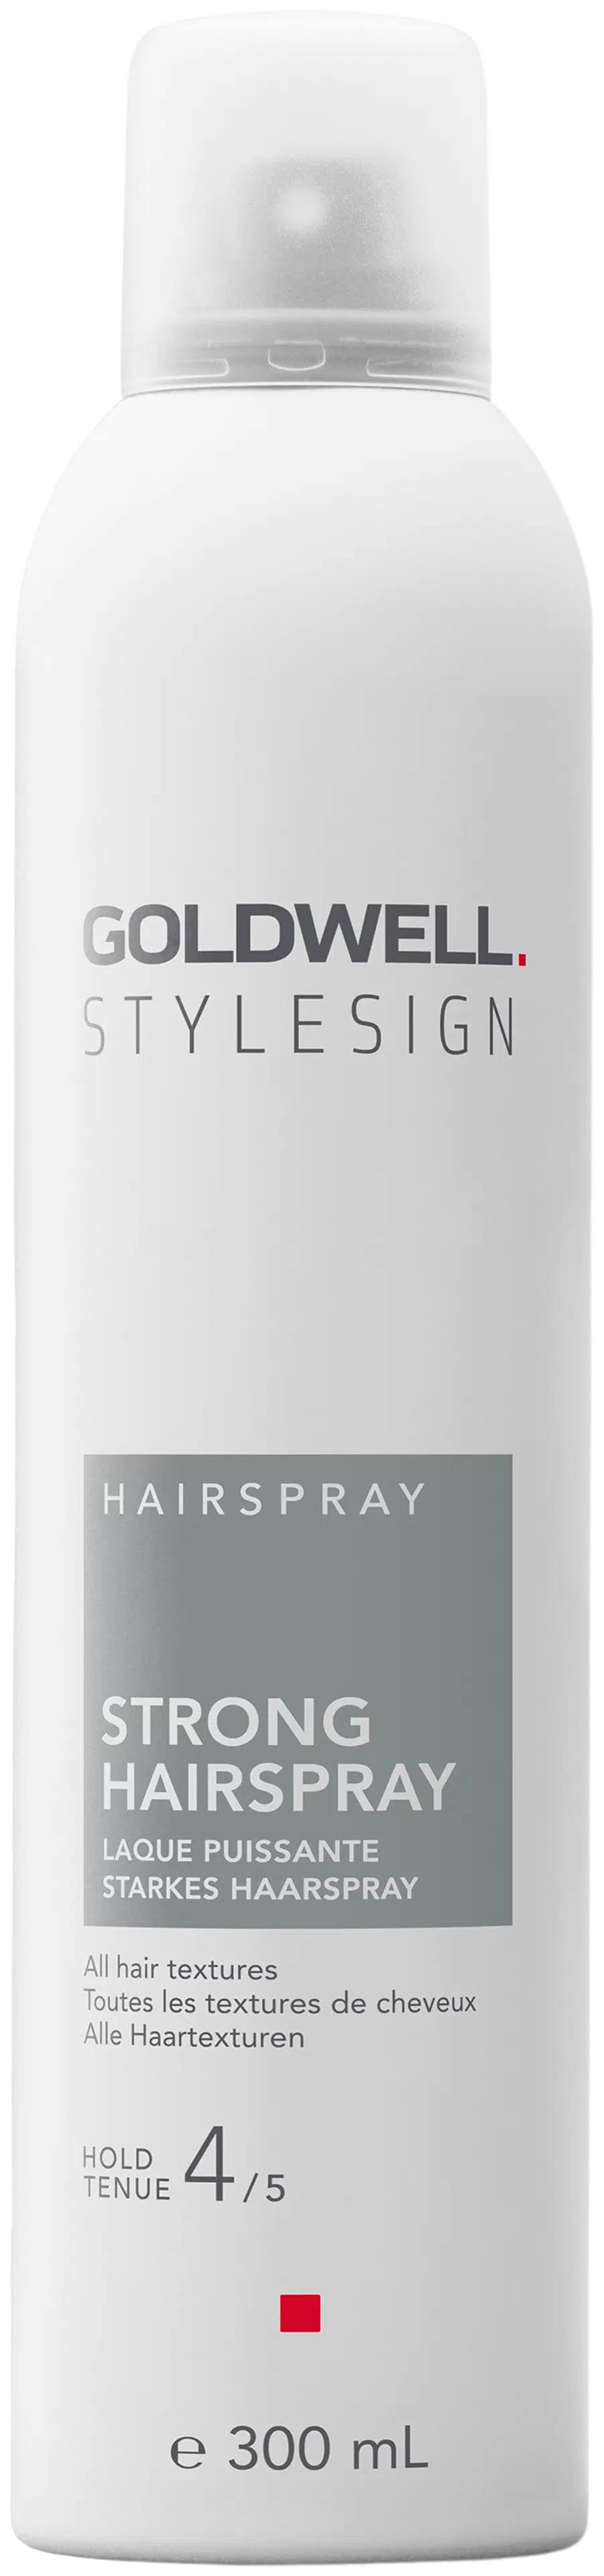 Goldwell StyleSign Hairspray Strong Hairspray voimakas hiuskiinne 300 ml